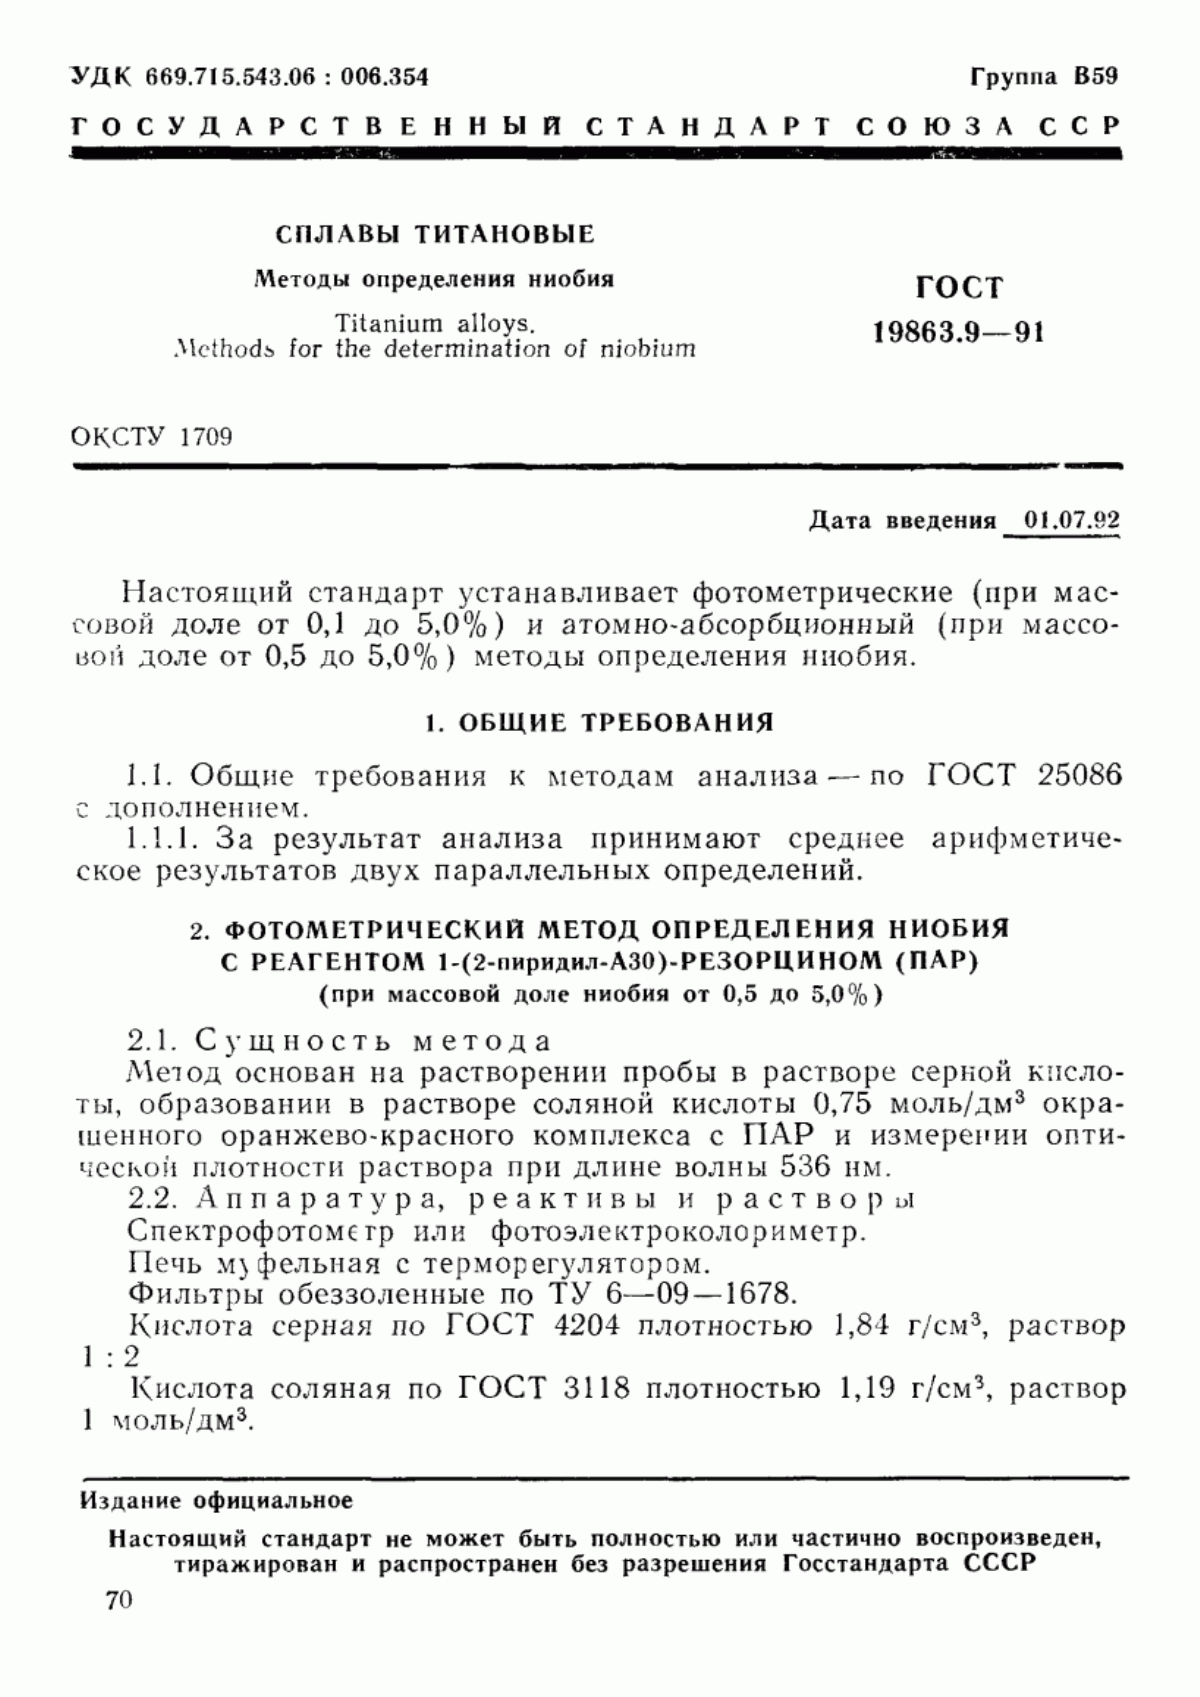 ГОСТ 19863.9-91 Сплавы титановые. Методы определения ниобия